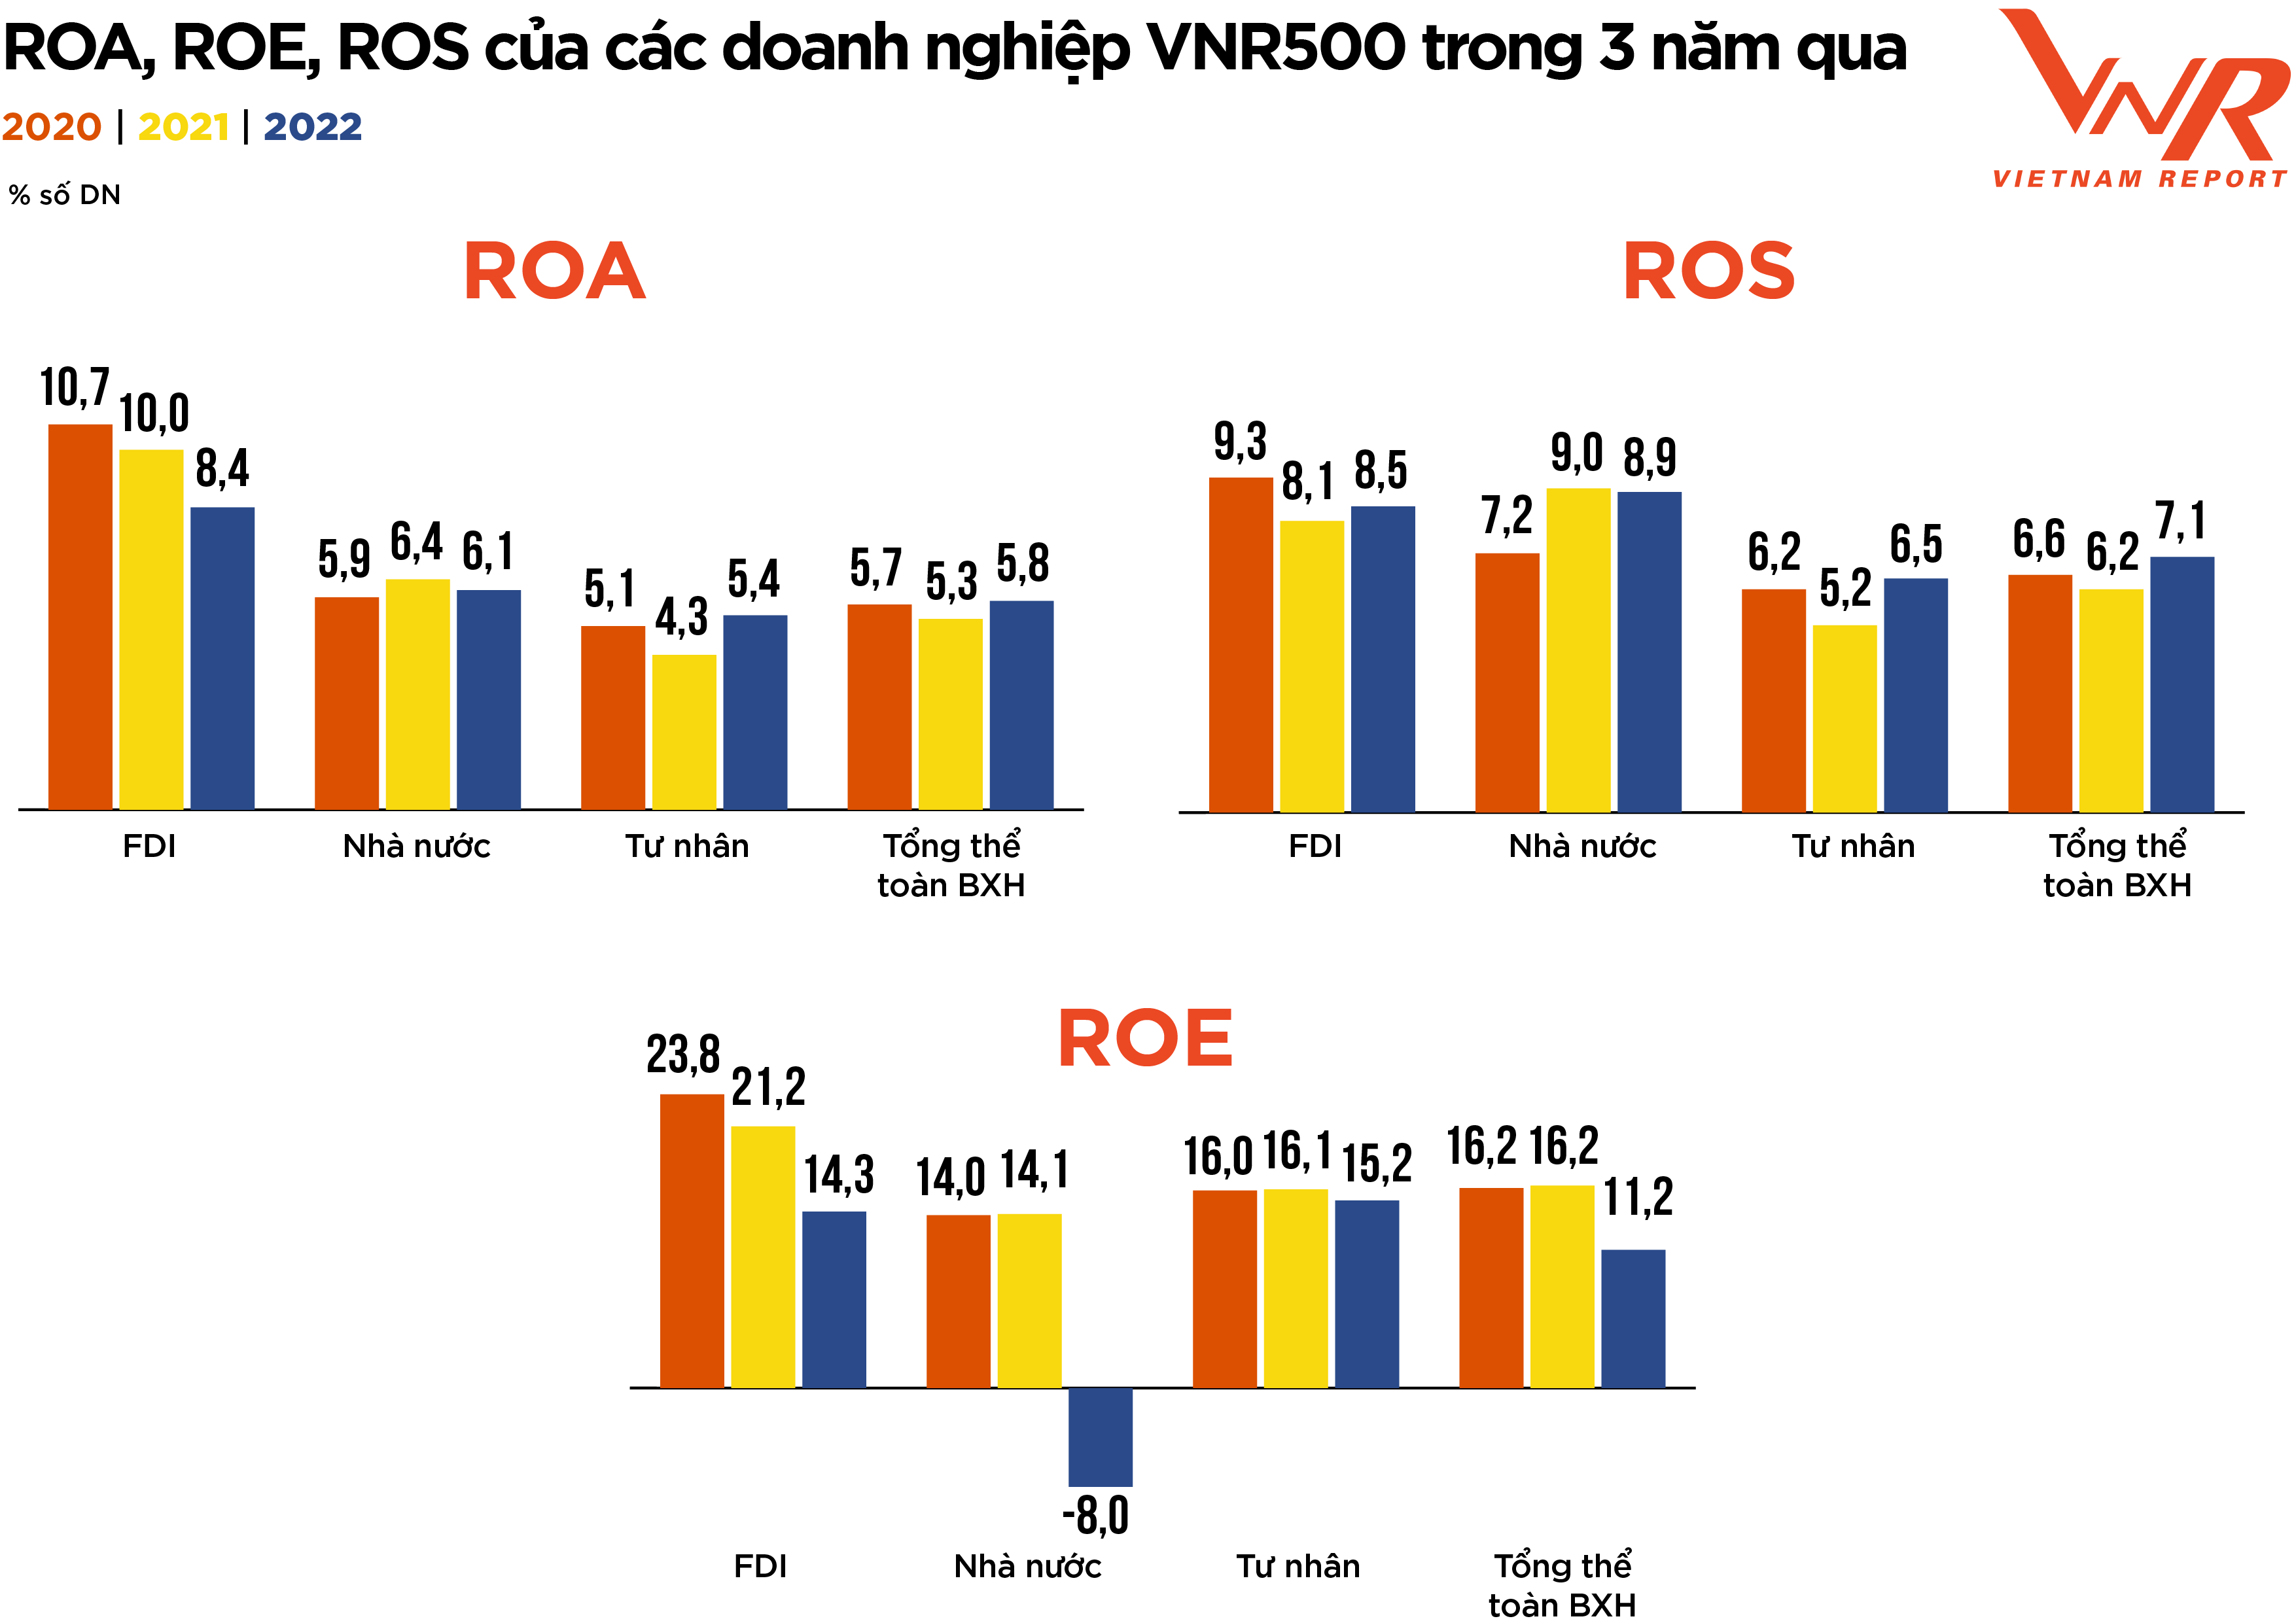 
Nguồn: Thống kê từ Bảng xếp hạng VNR500 năm 2020, 2021 và 2022, thực hiện bởi Vietnam Report
